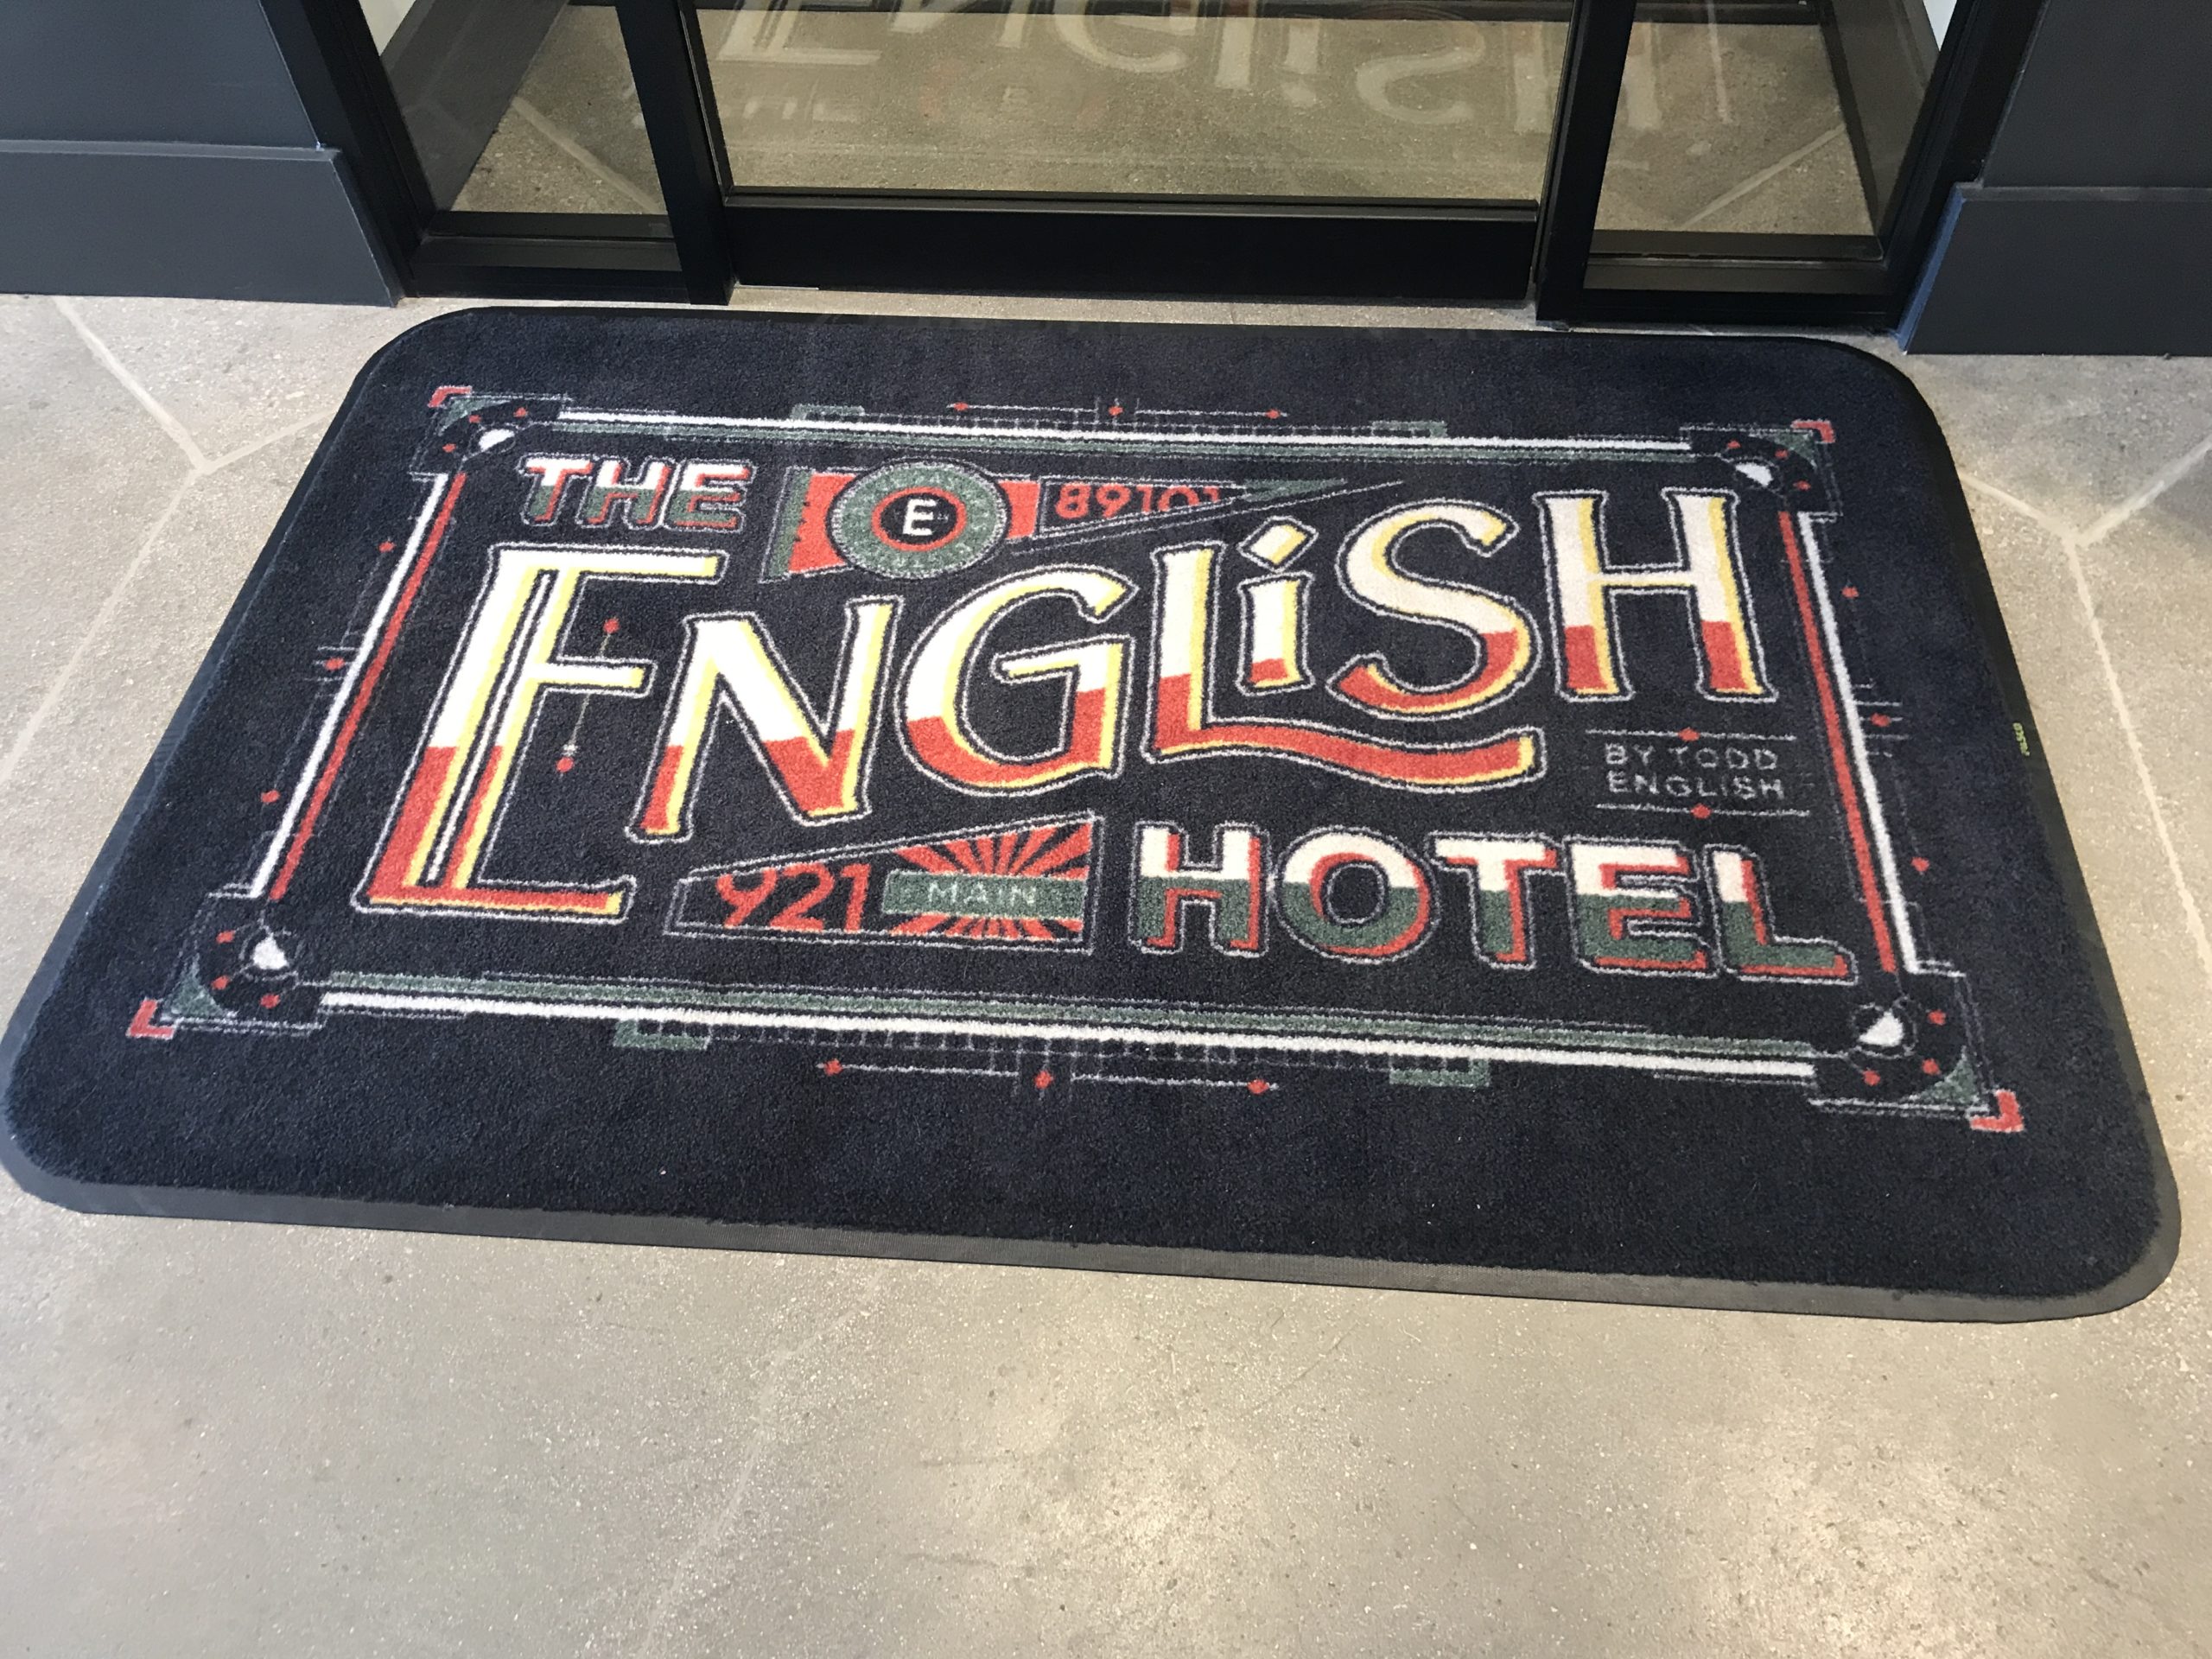 English hotel las vegas welcome mat